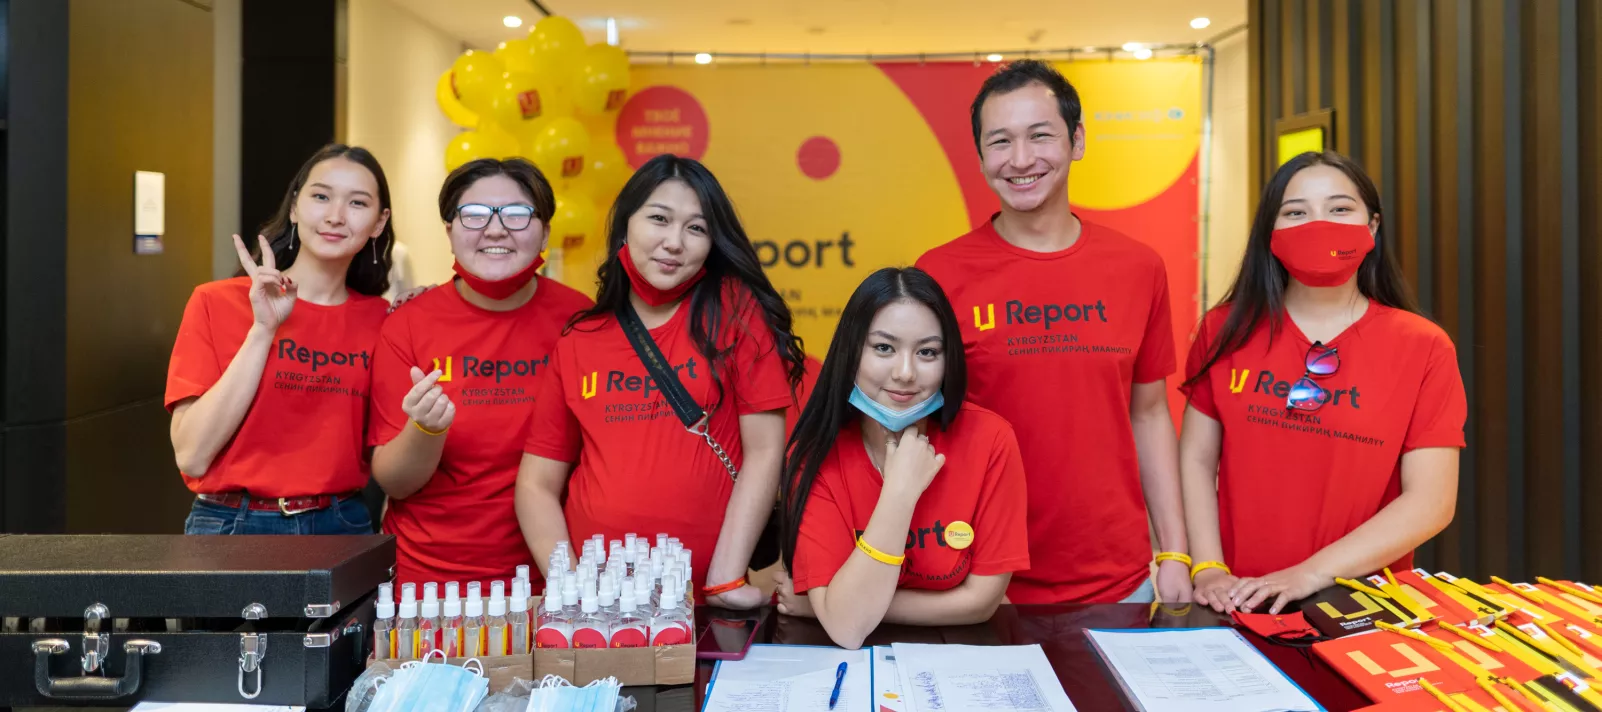 u-report volunteers